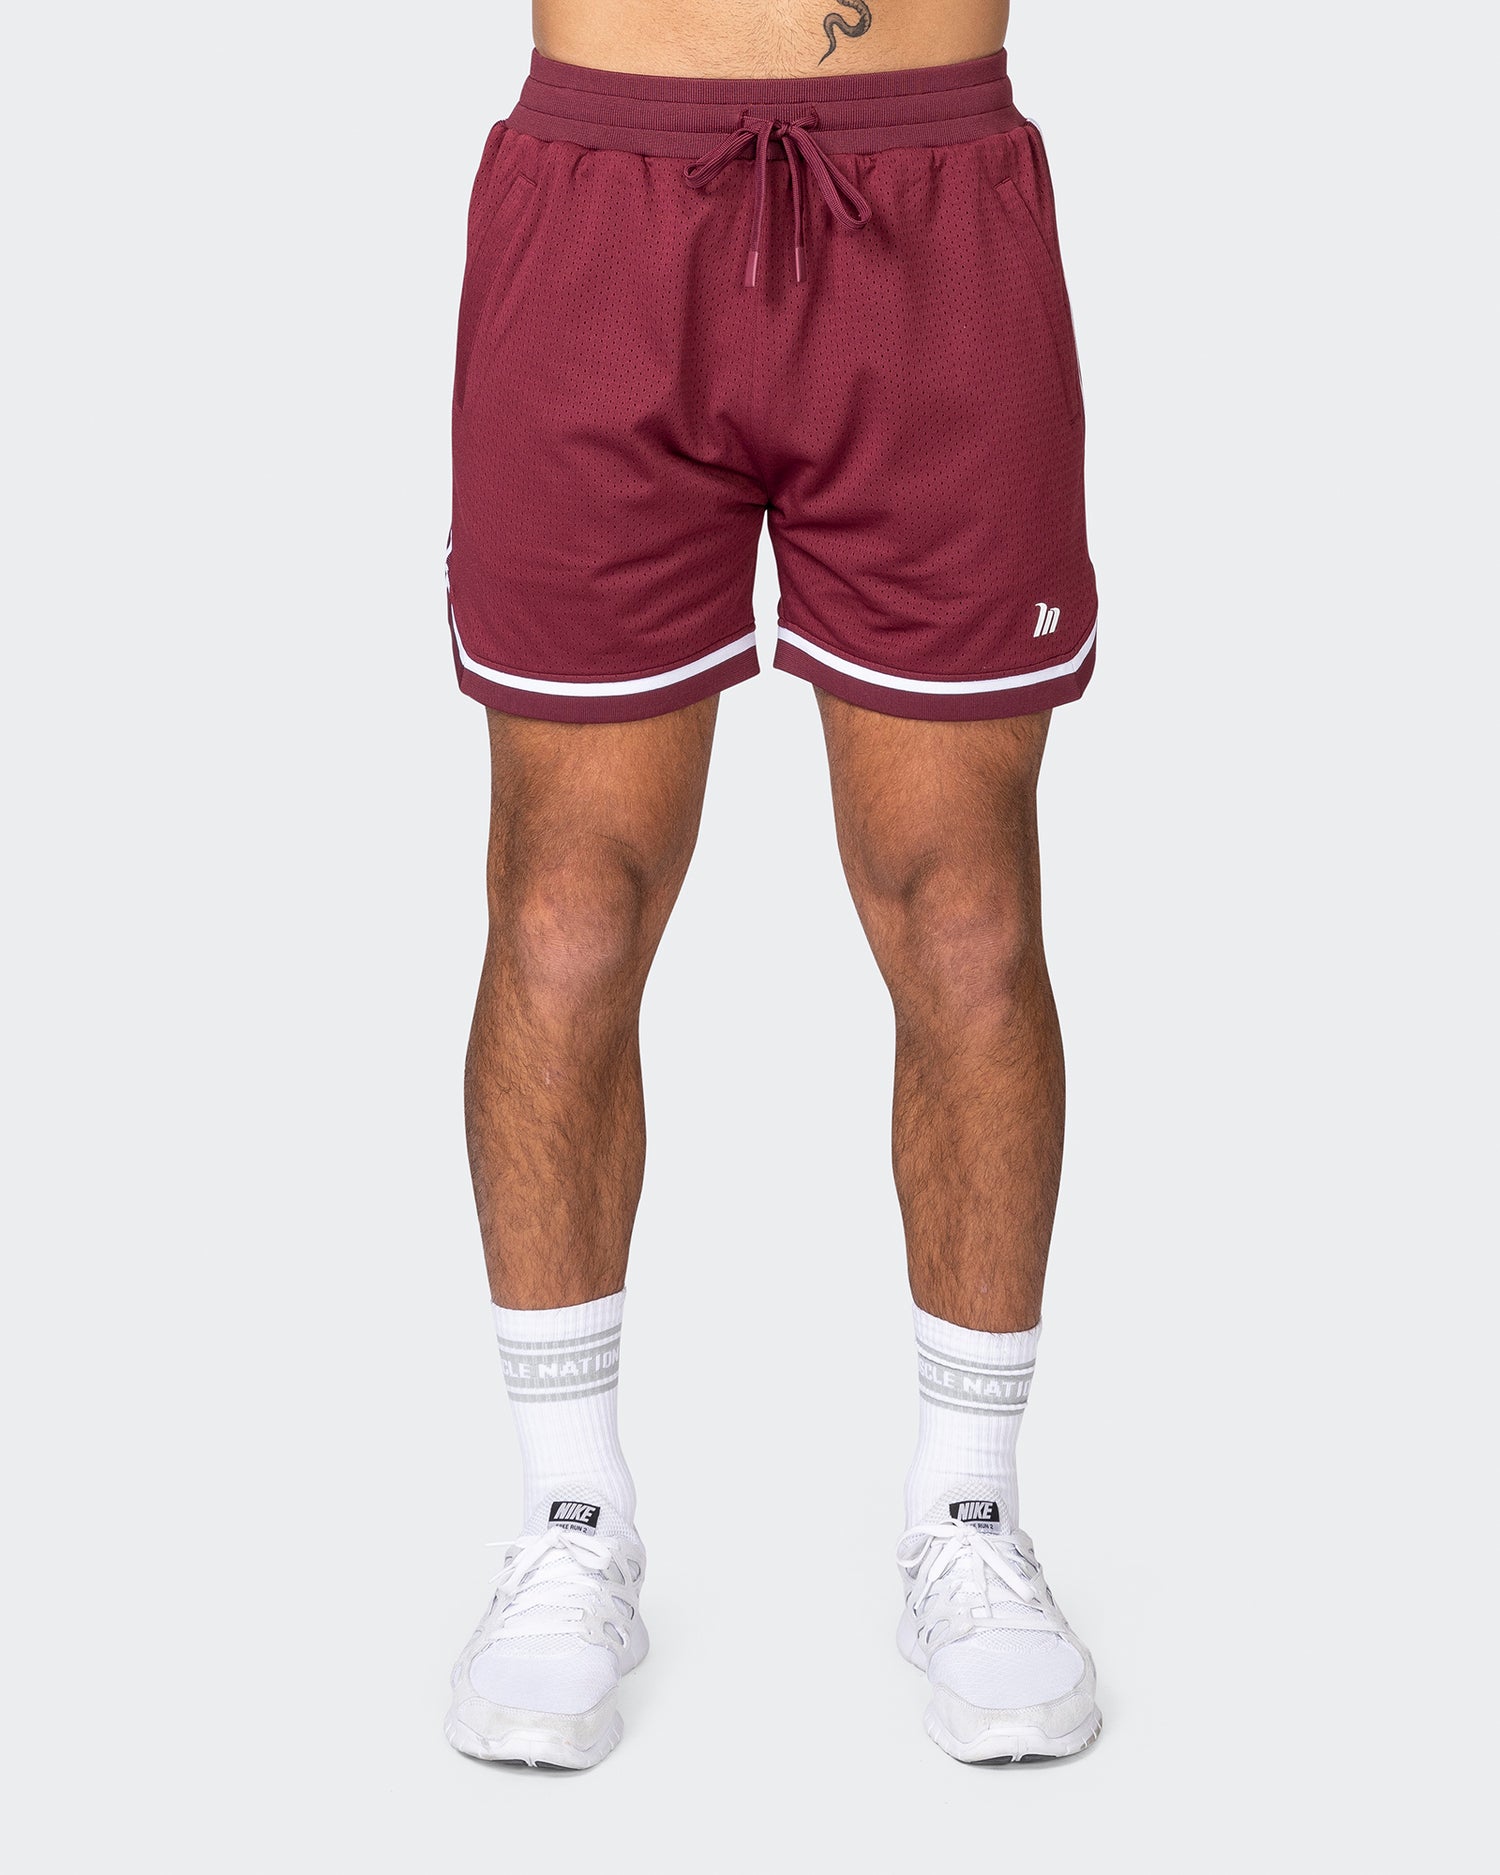 Mens 5" Basketball Shorts - Wine